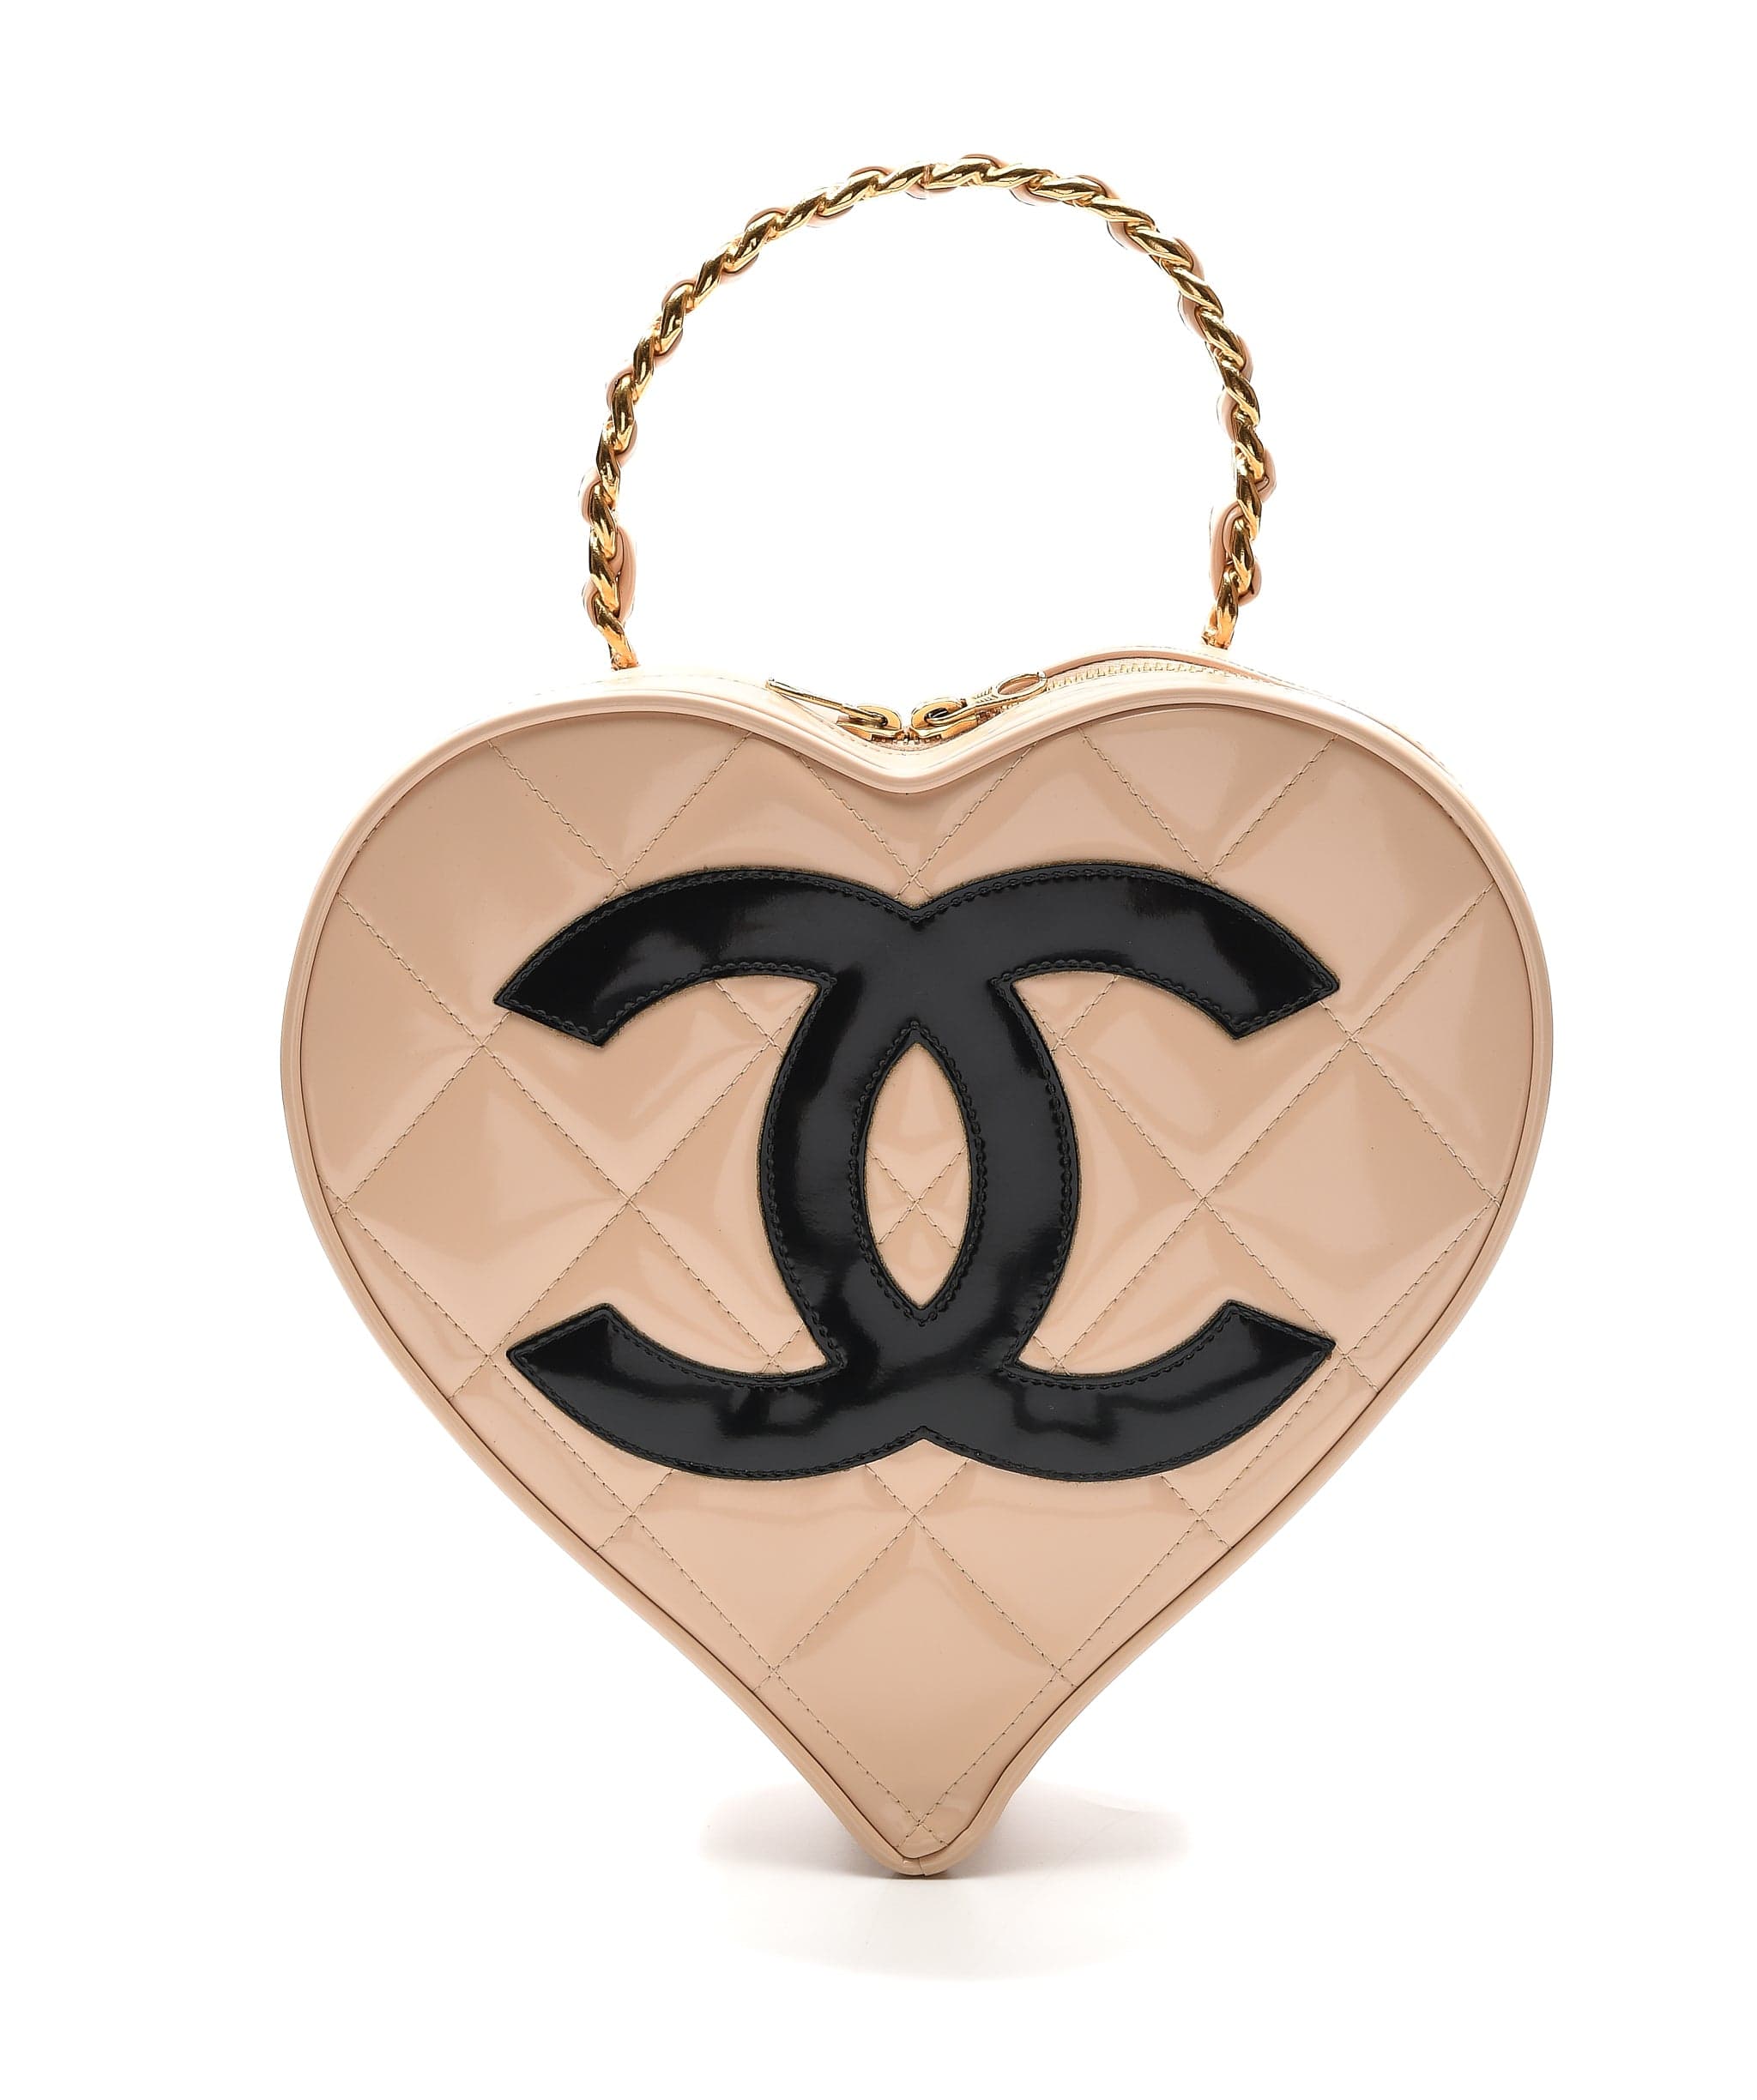 Vintage Chanel Heart Vanity Bag Beige and Black Patent Antique Gold Hardware